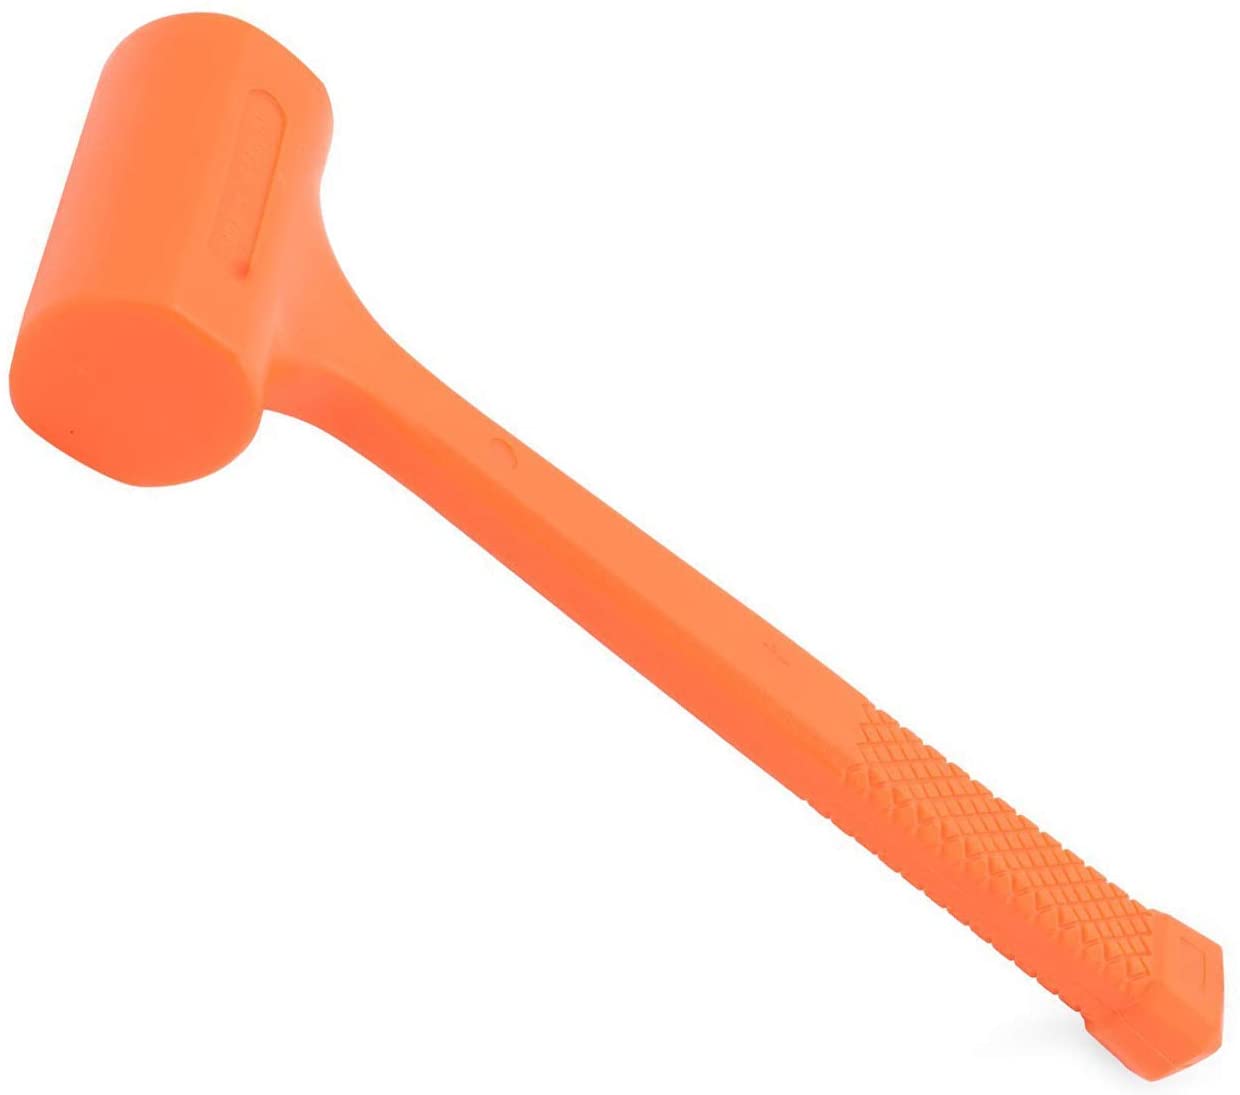 King 1485-0 Dead Blow Hammer, 3 lb, Neon Orange